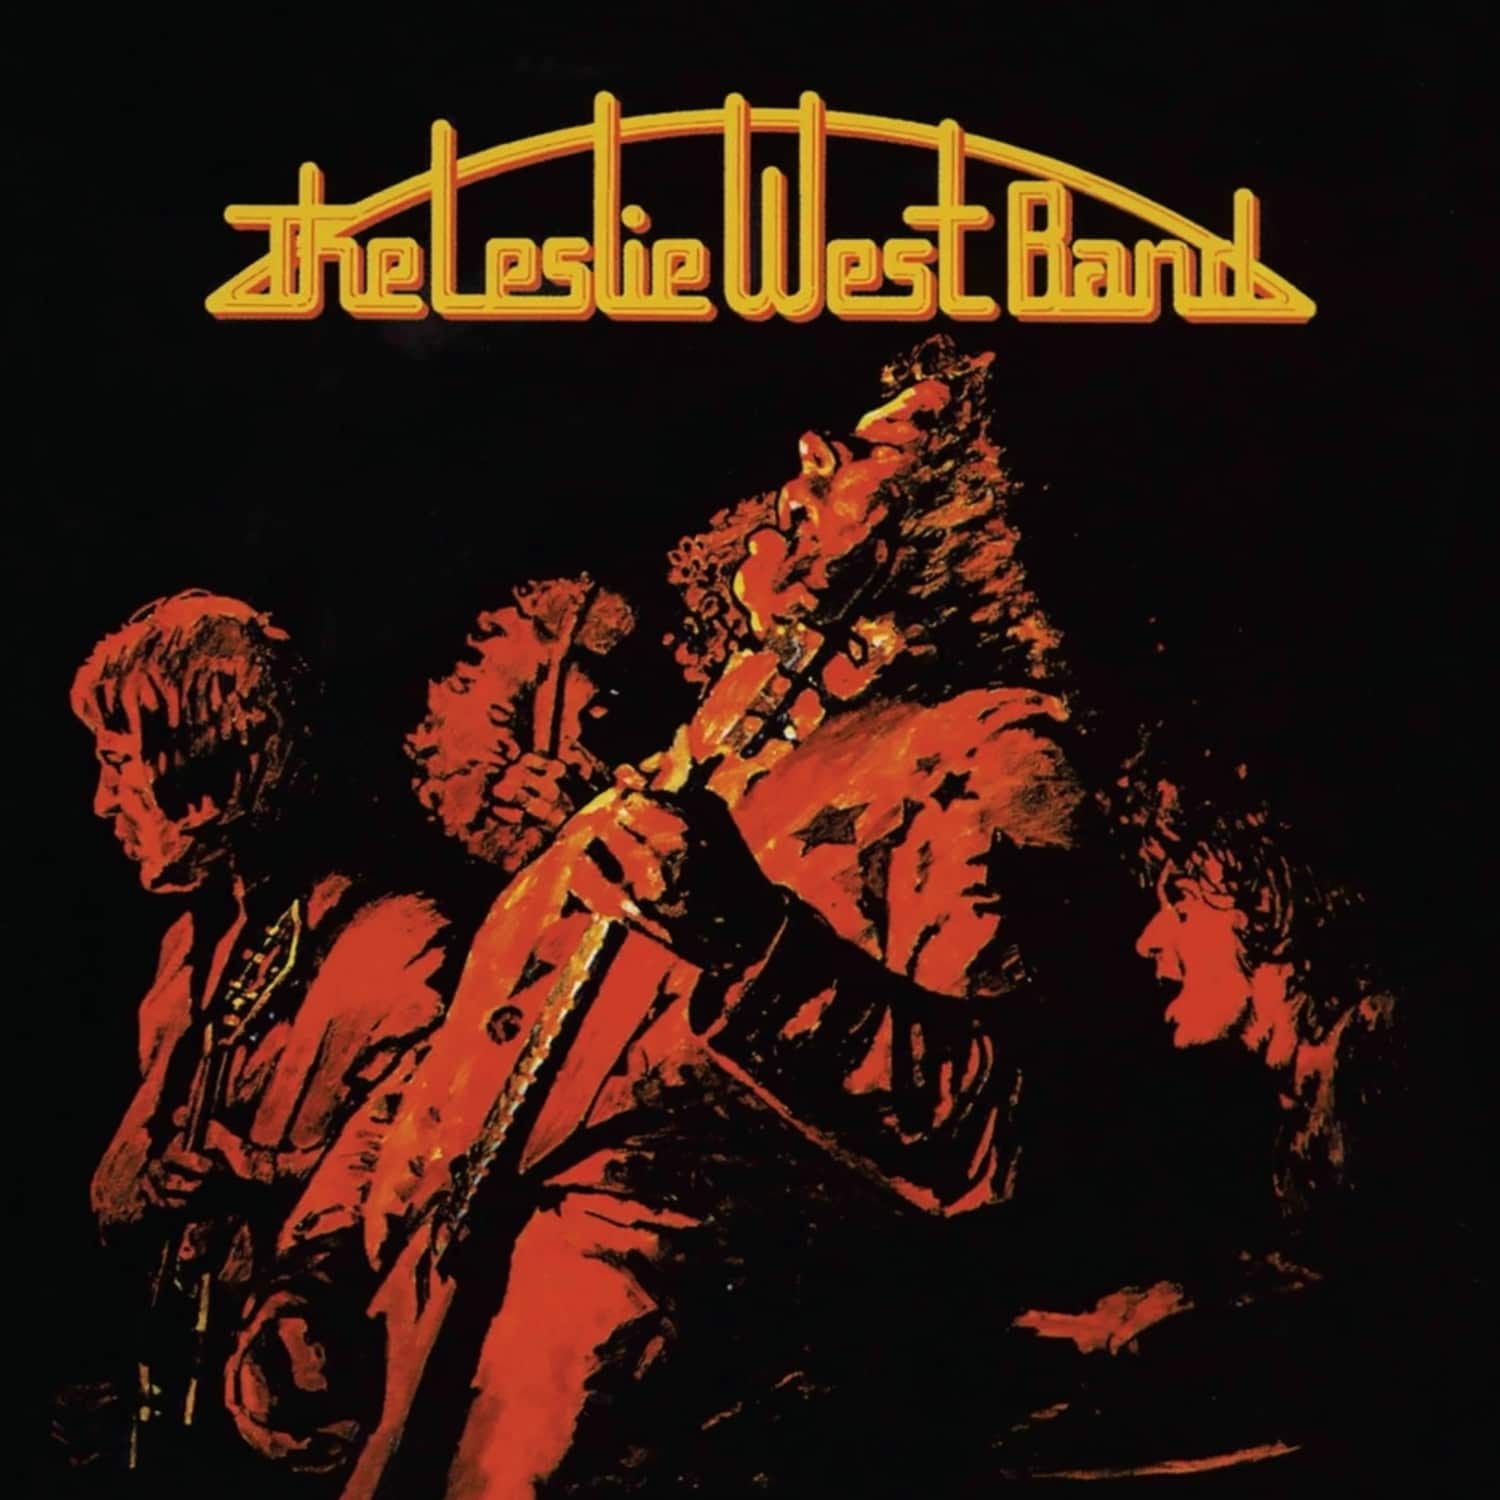 Leslie West - THE LESLIE WEST BAND 